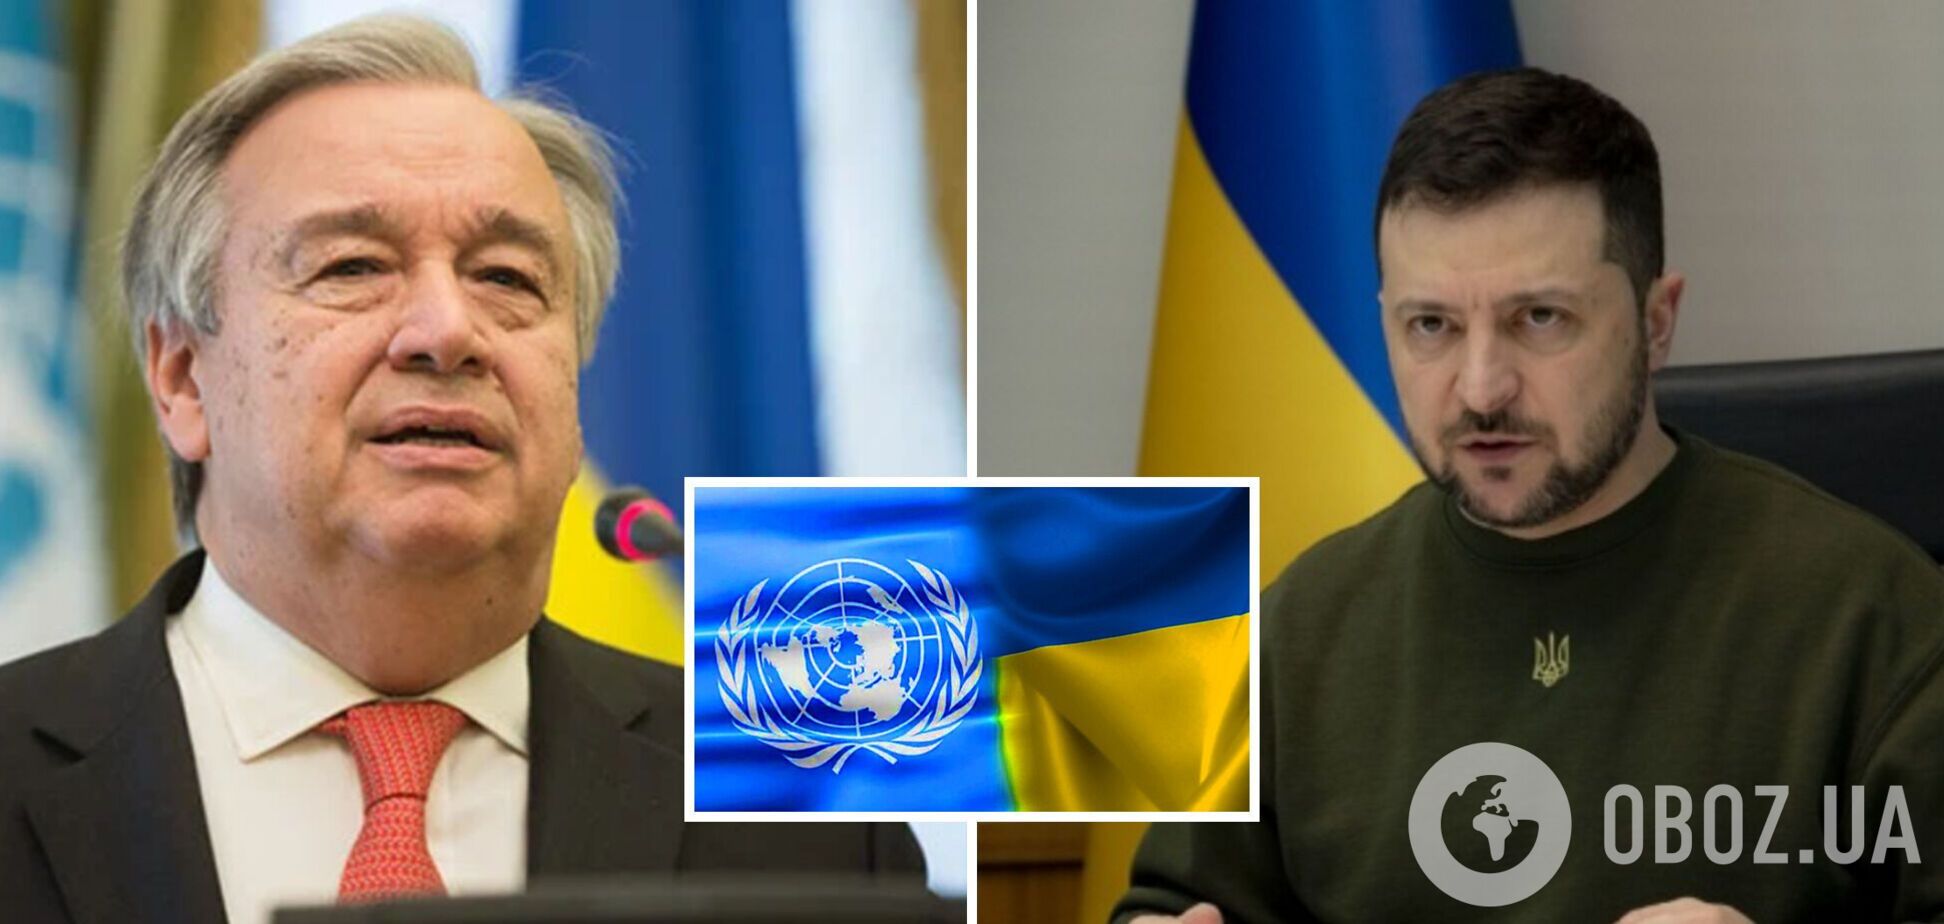 'В Україні вирішується, яким буде майбутнє': Зеленський на зустрічі з генсеком ООН вказав на ключові виклики